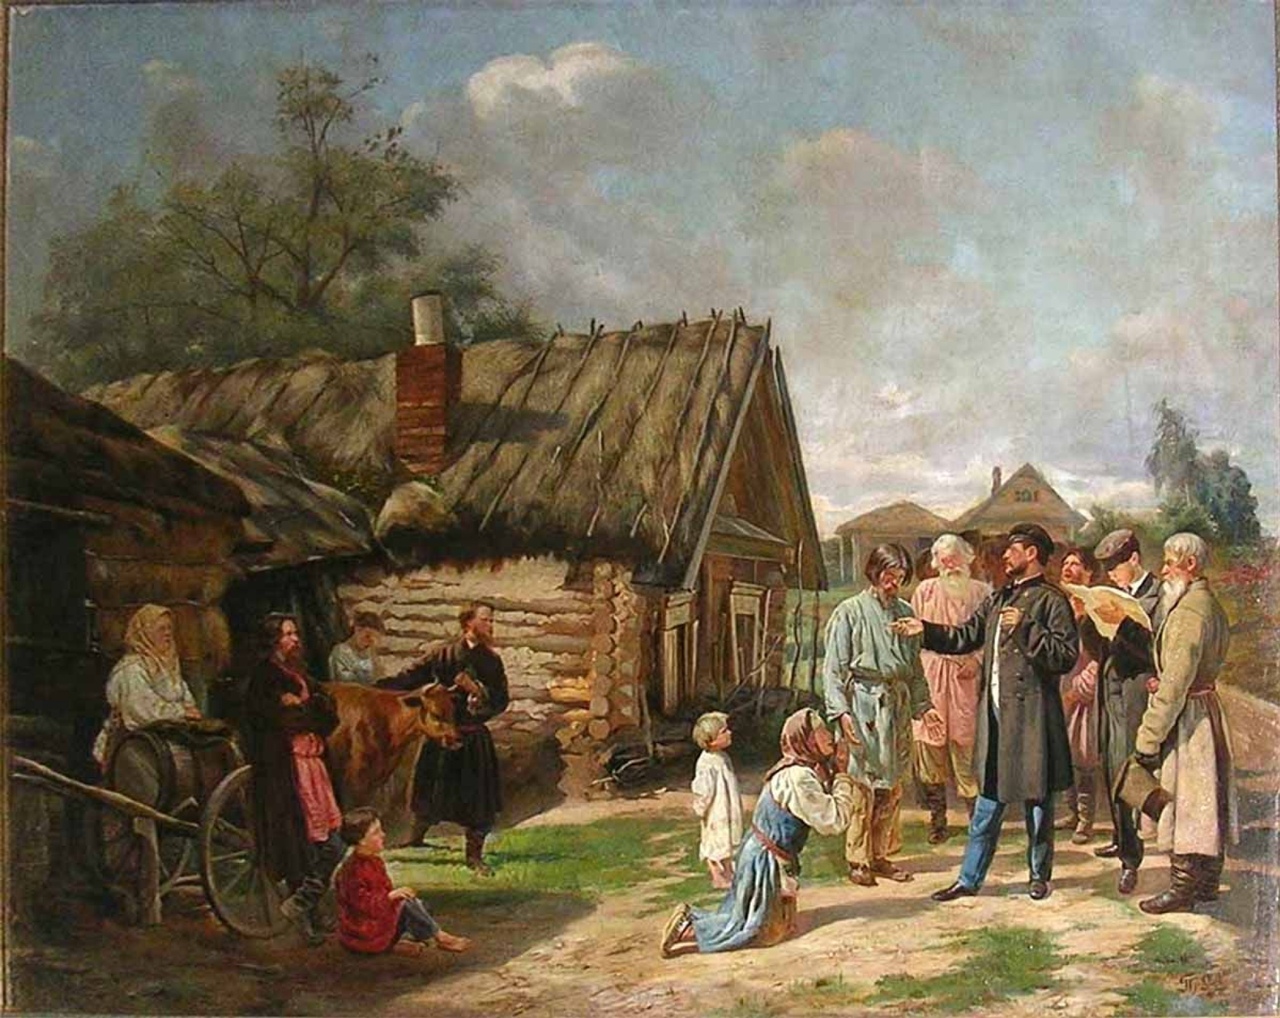 Сбор недоимок. Худ. В. В. Пукирев, 1875.